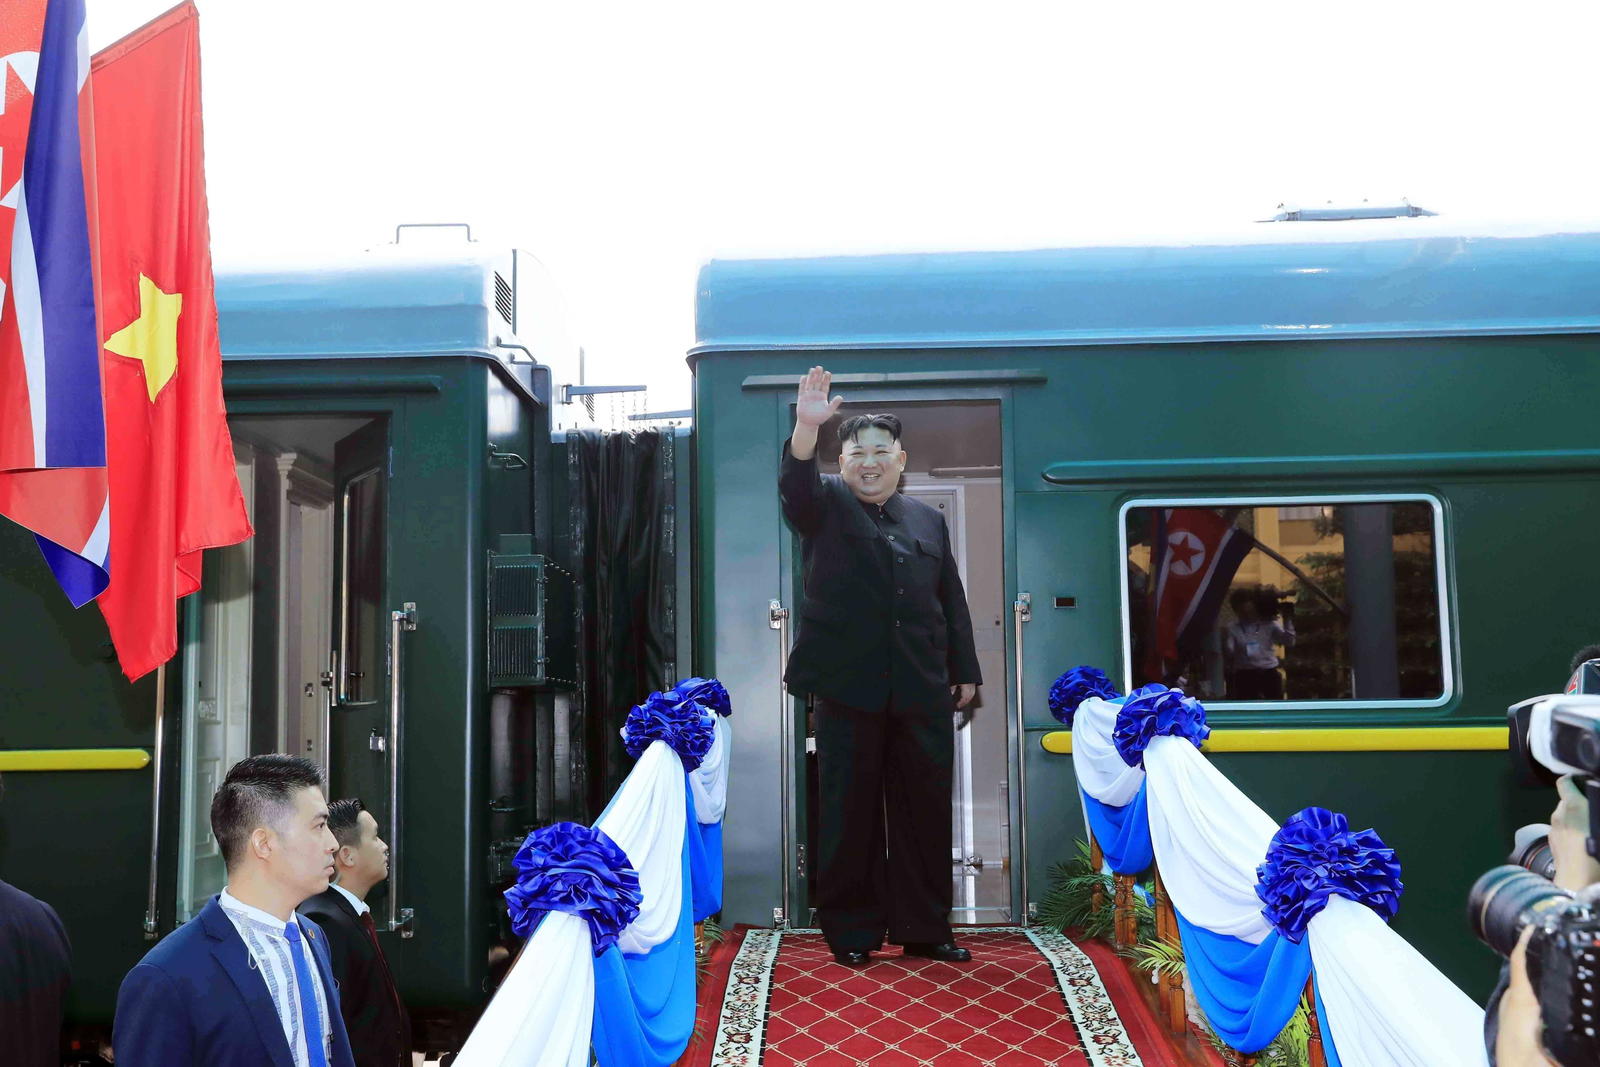 Sonriente y con los brazos en alto estrechando sus manos en una pose victoriosa, Kim Jong-un abordó su tren privado.